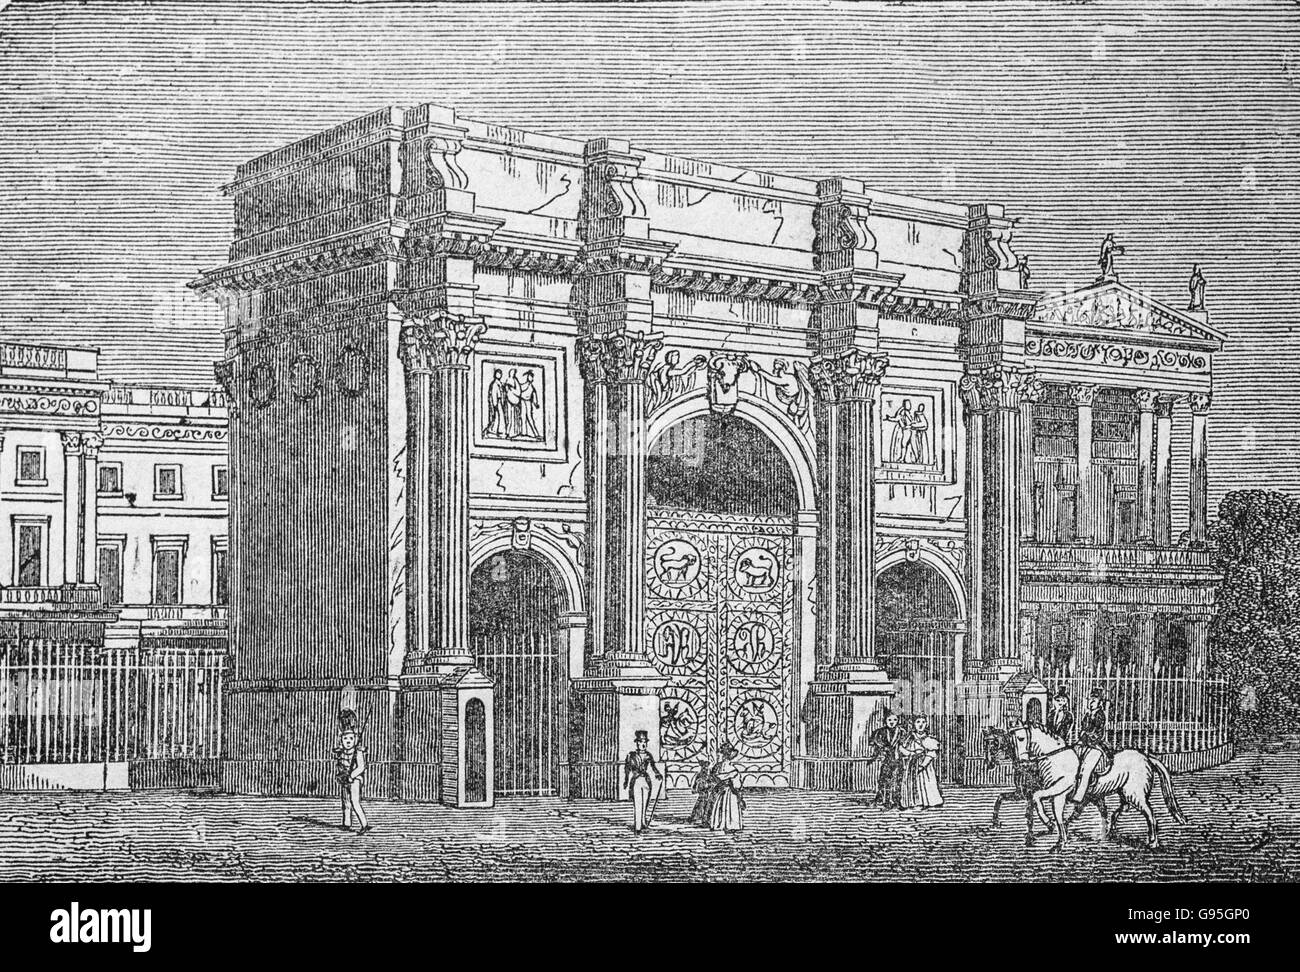 Arche d'entrée du nouveau Palais, le parc de St James, Londres, à partir d'une gravure du milieu du xixe siècle. Banque D'Images